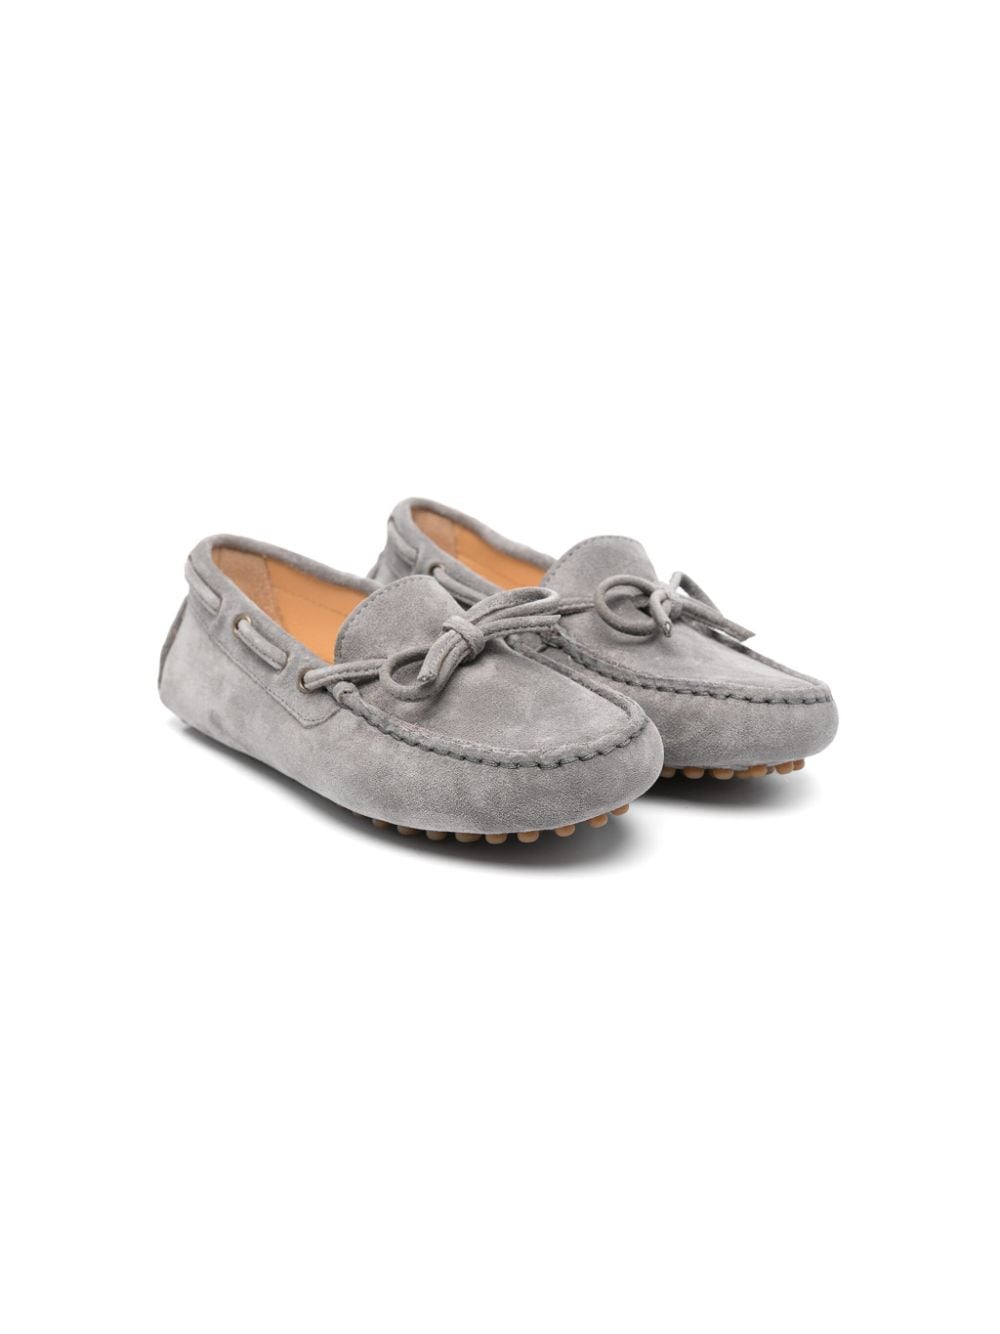 Brunello Cucinelli Kids suede deck shoes - Grey von Brunello Cucinelli Kids